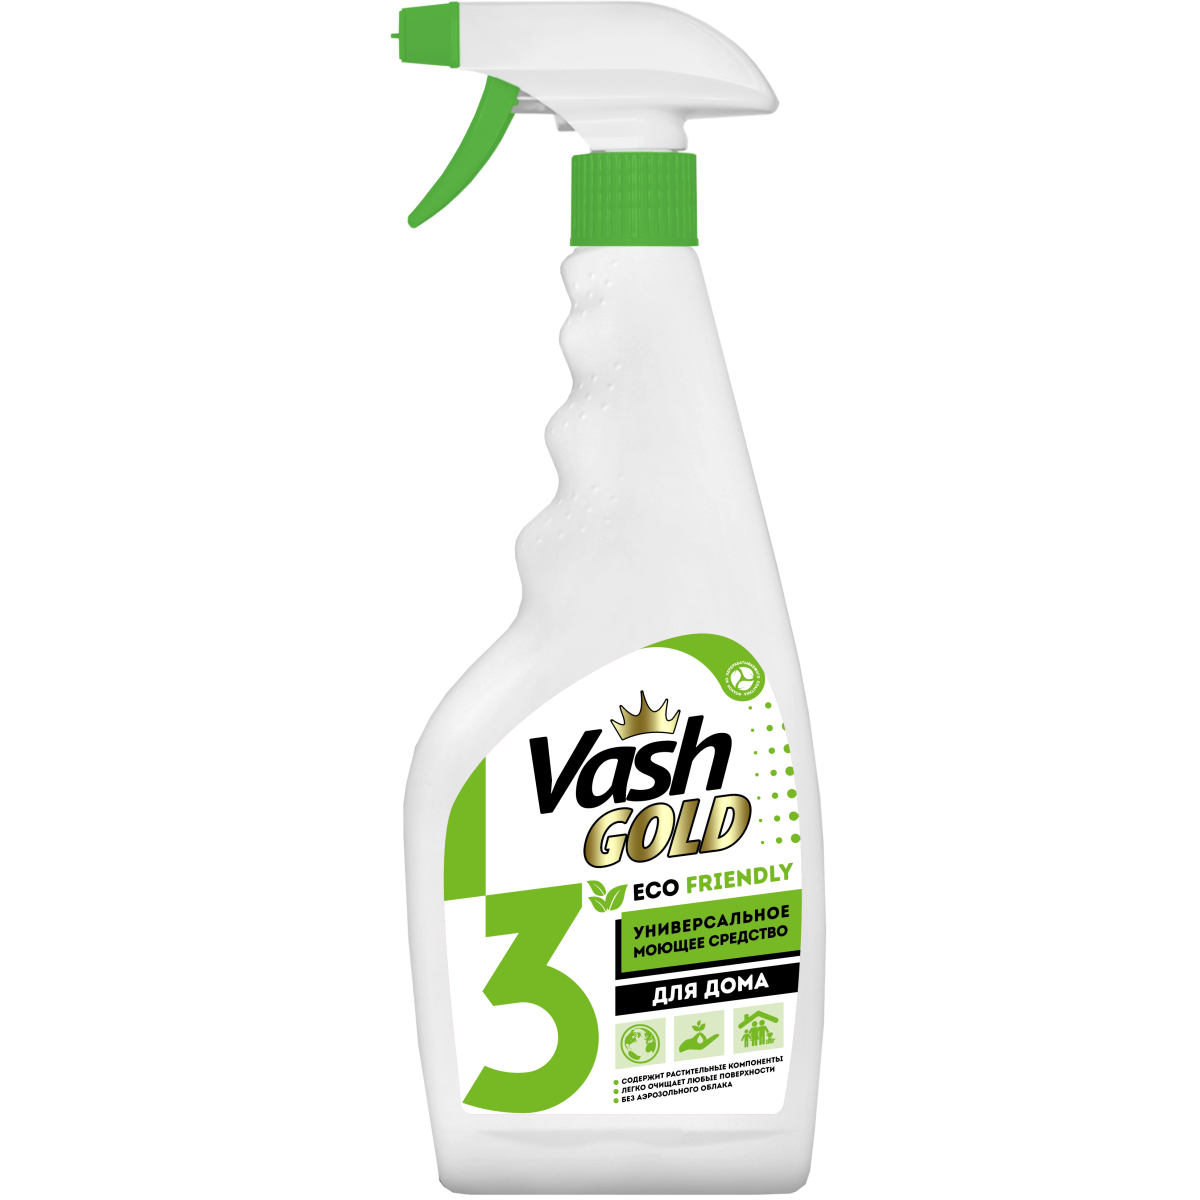 Средство чистящее Vash Gold Eco Friendly универсальное для дома, спрей, 500 мл универсальное чистящее средство для ванной и туалета hg